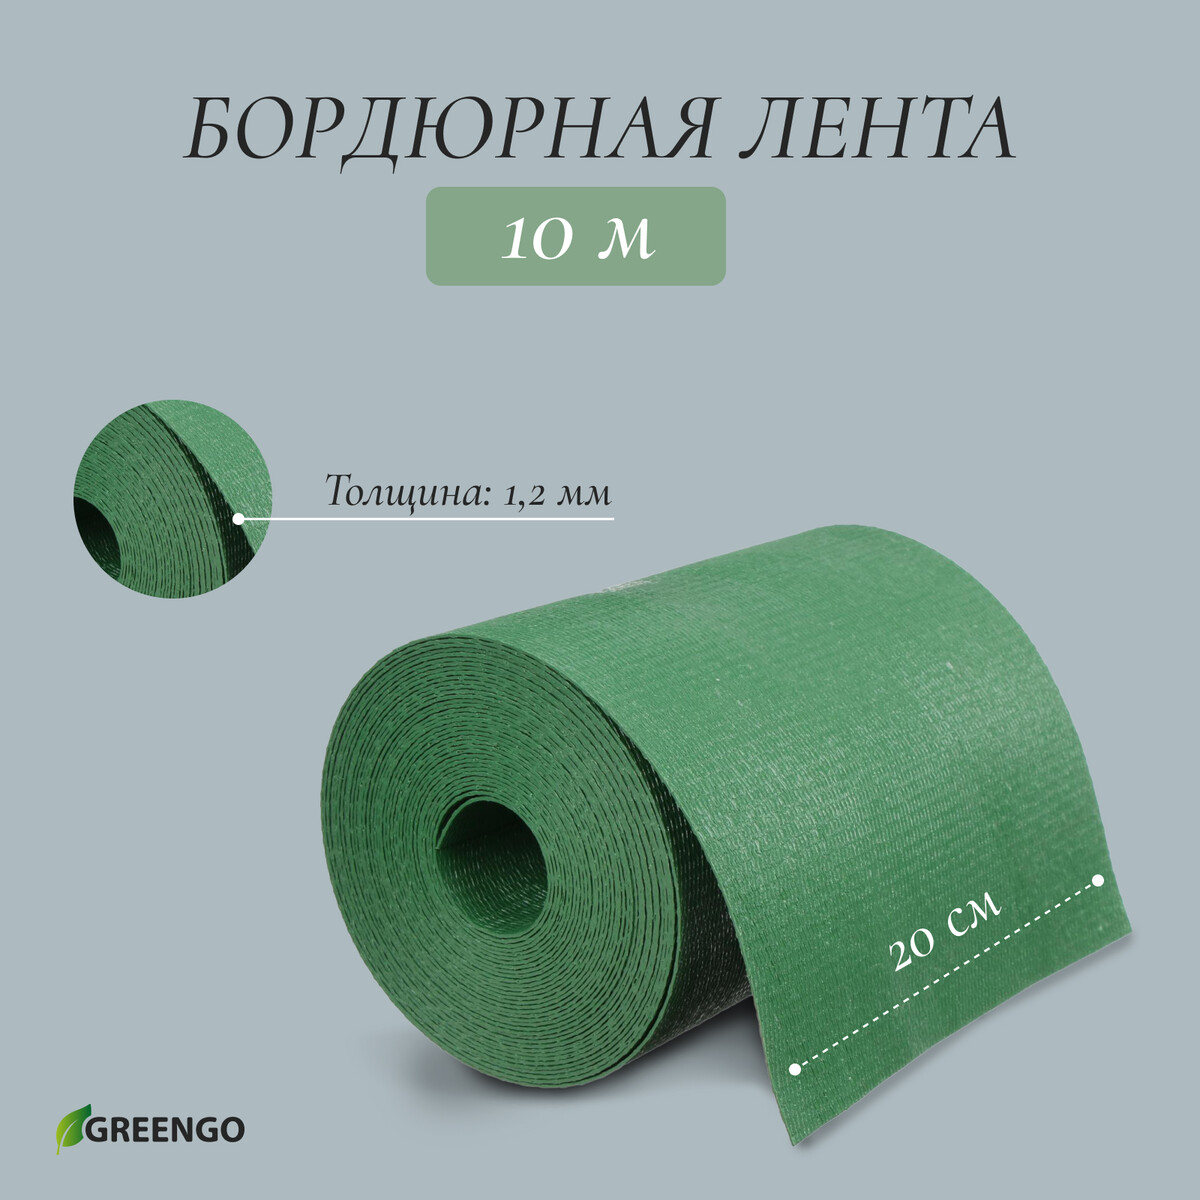 Лента бордюрная, 0.2 × 10 м, толщина 1.2 мм, пластиковая, зеленая, greengo лента бордюрная 0 2 × 9 м толщина 0 6 мм пластиковая гофра розовая